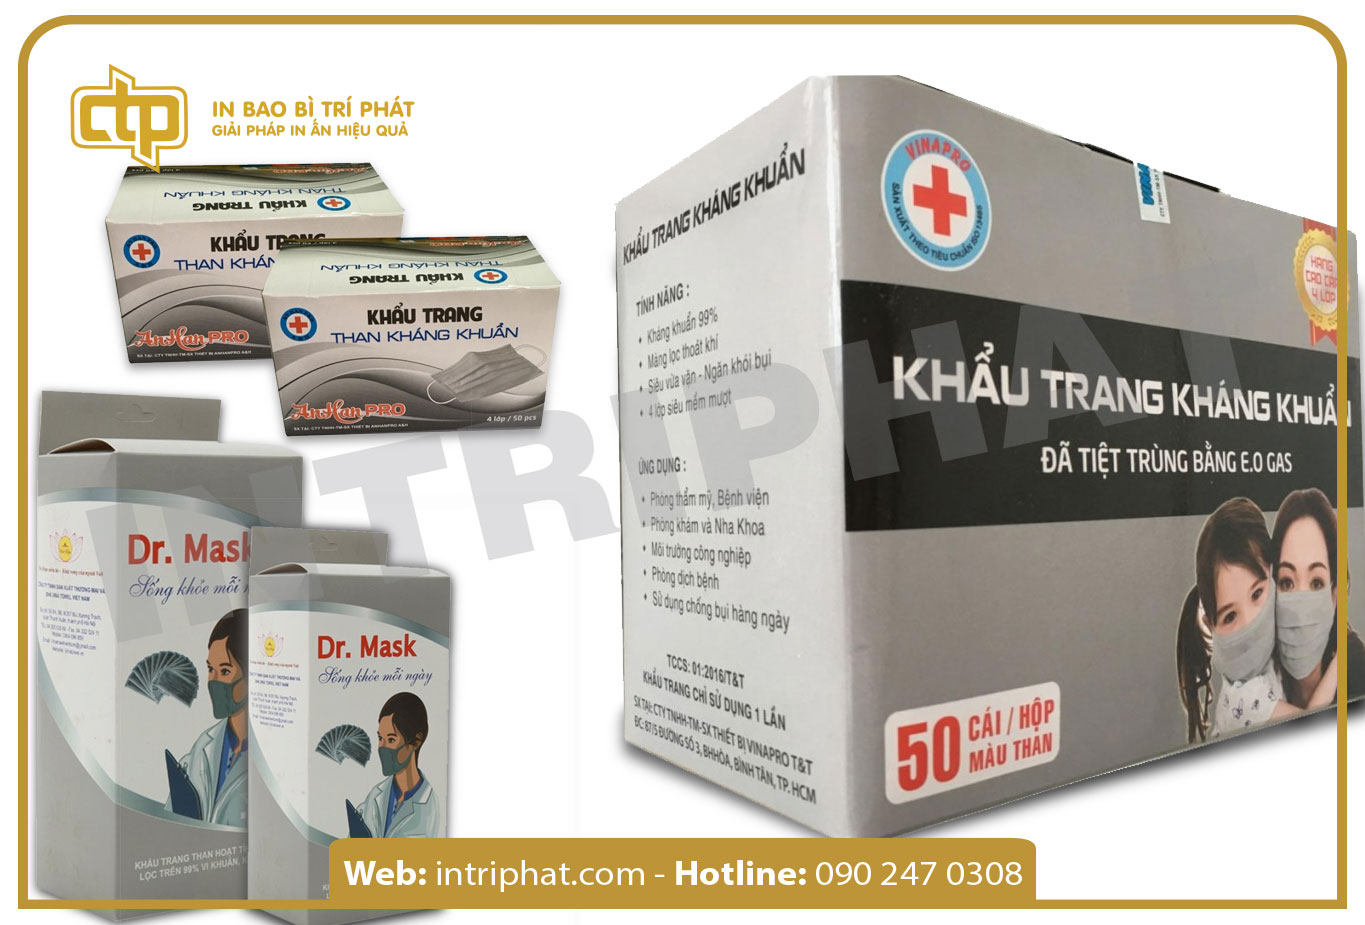 Các mẫu hộp khẩu trang y tế tại In Trí Phát - Mẫu 4